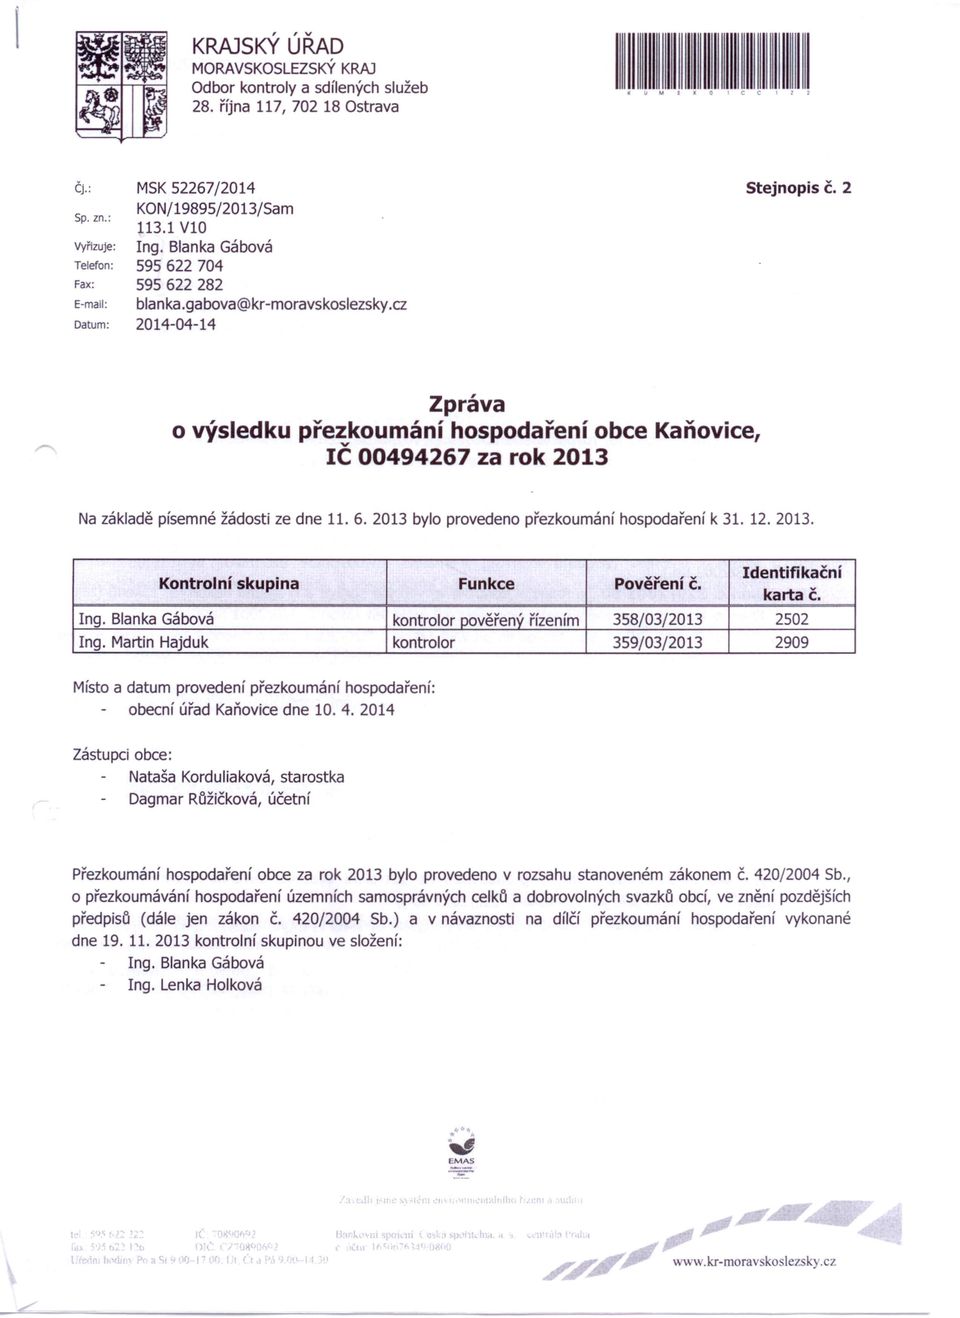 2 Zpráva o výsledku přezkoumání hospodaření obce Kaňovice, IČ 00494267 za rok 2013 Na základě písemné žádosti ze dne 11. 6. 2013 bylo provedeno přezkoumání hospodaření k 31. 12. 2013. Kontrolní skupina Funkce Pověření Č.